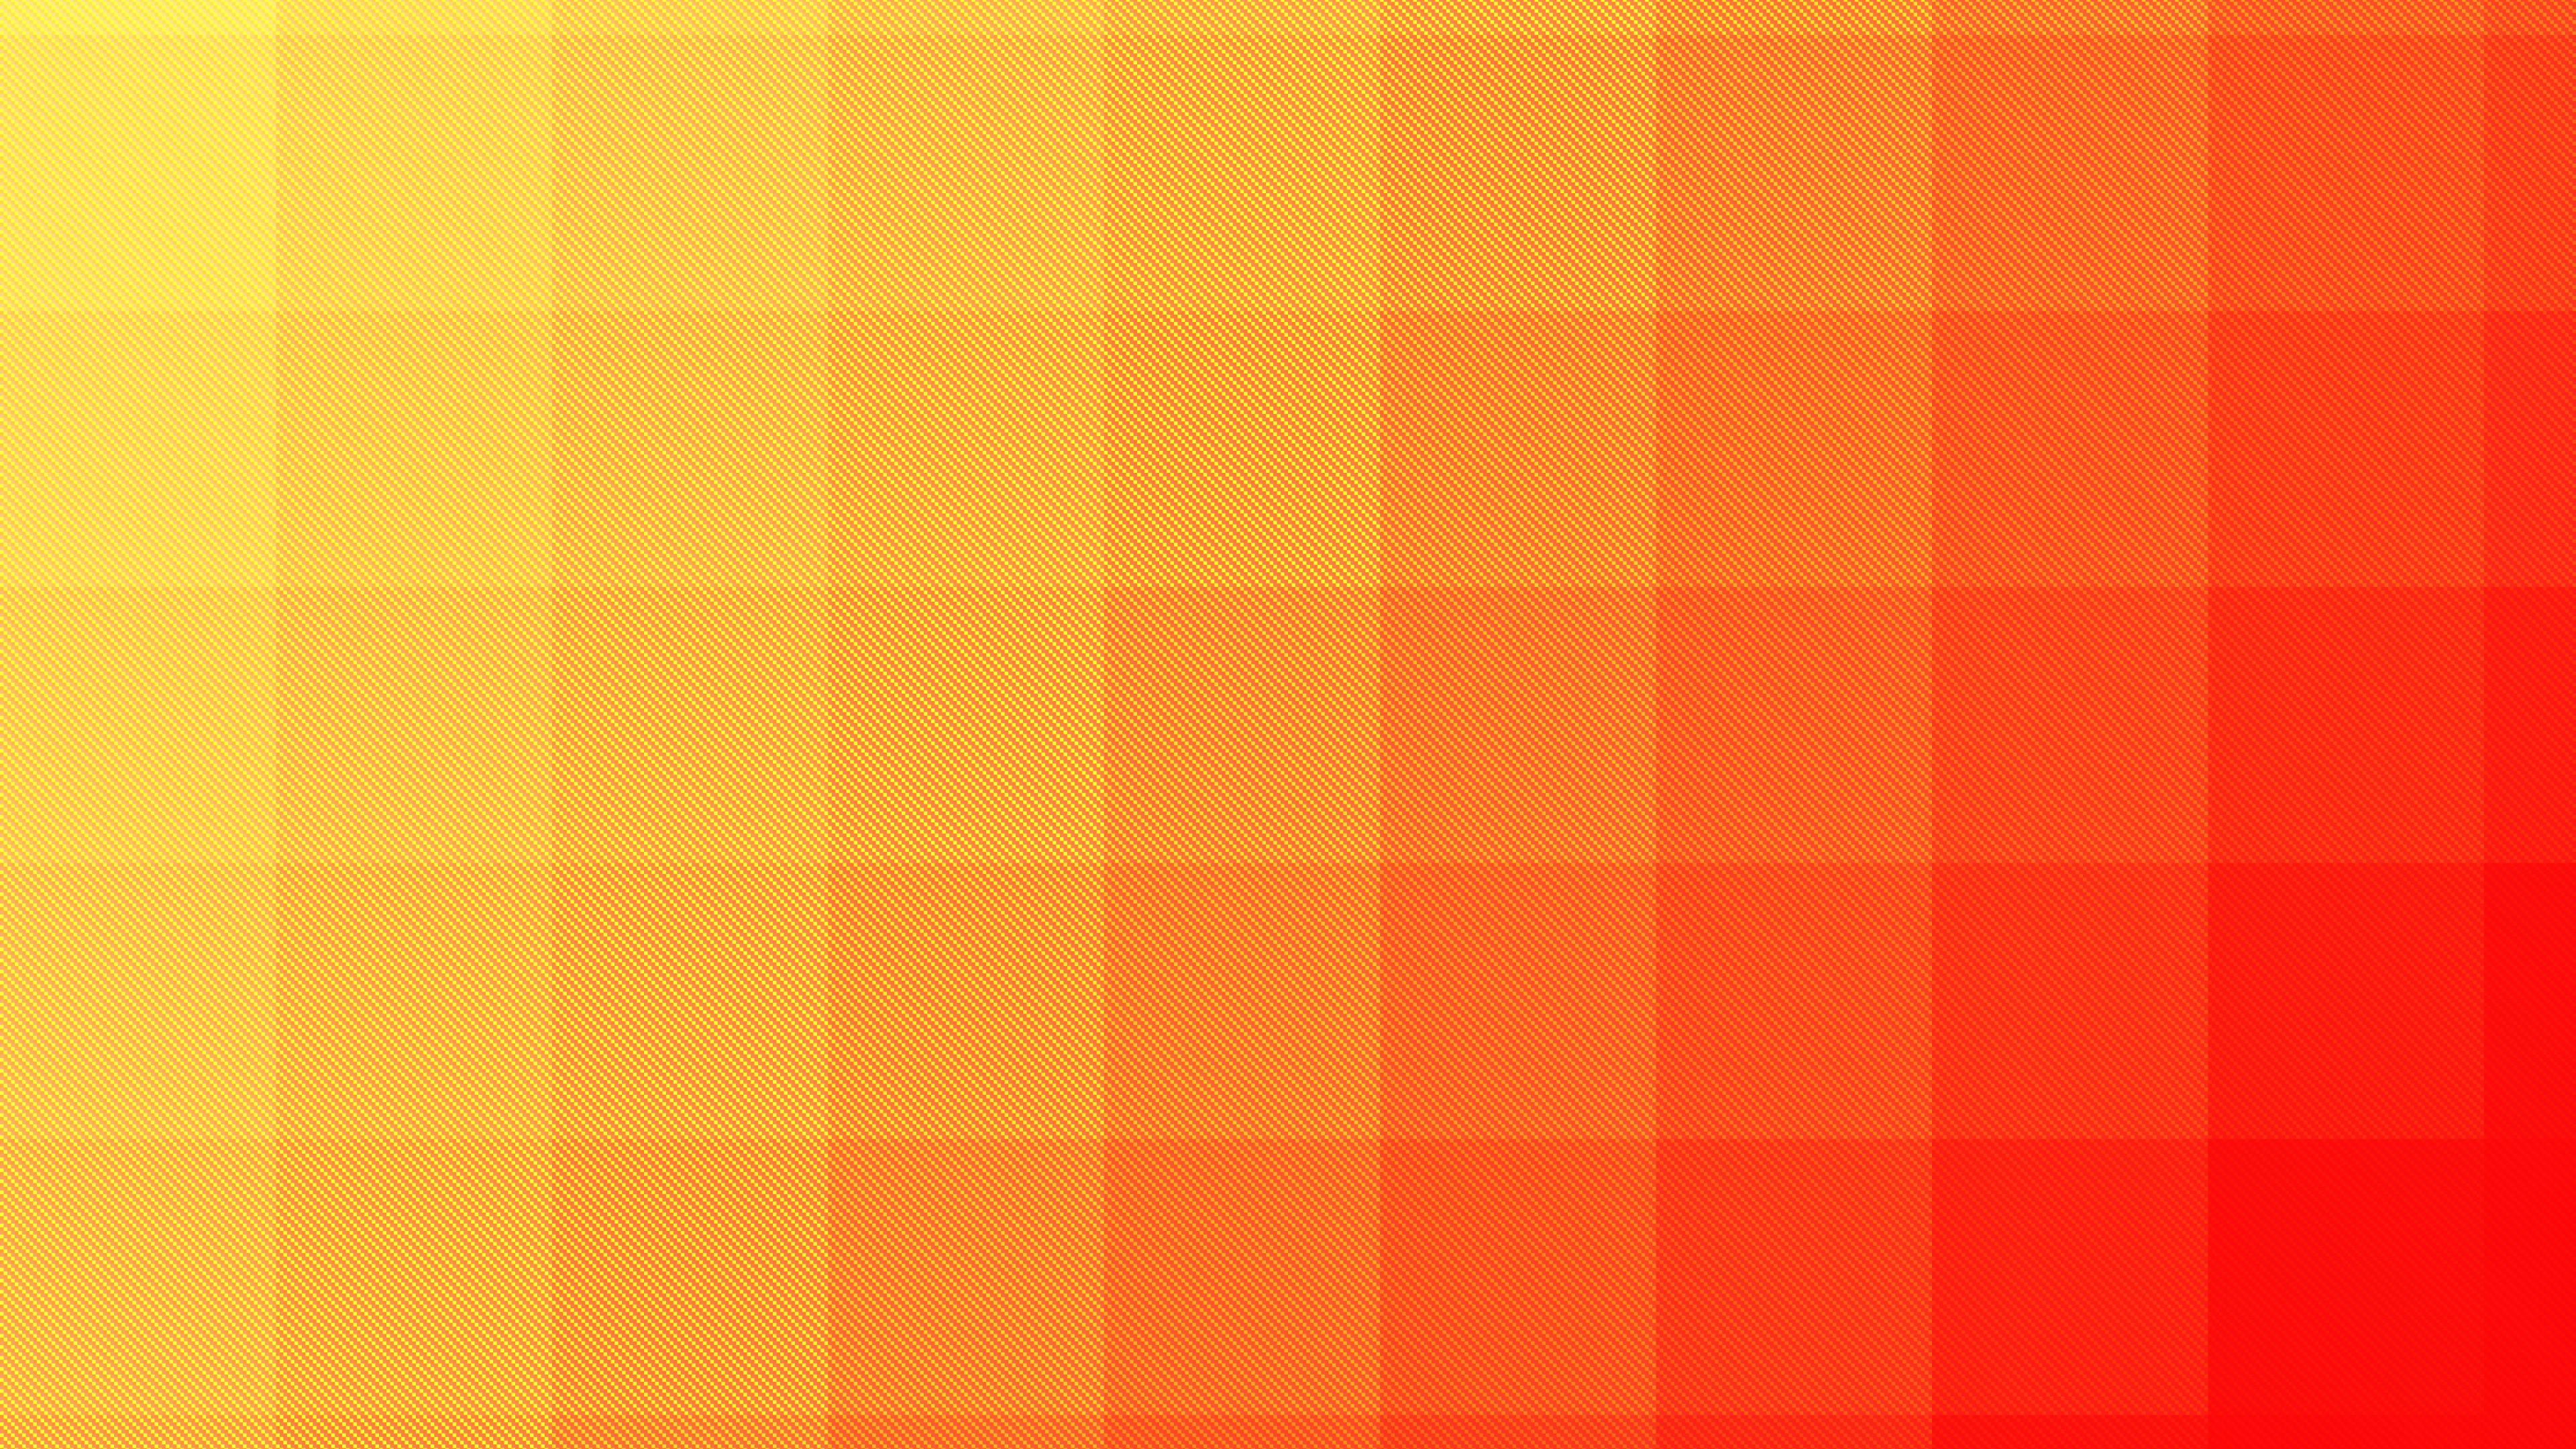 Aesthetic Orange Wallpaper Hd - HD Wallpaper 